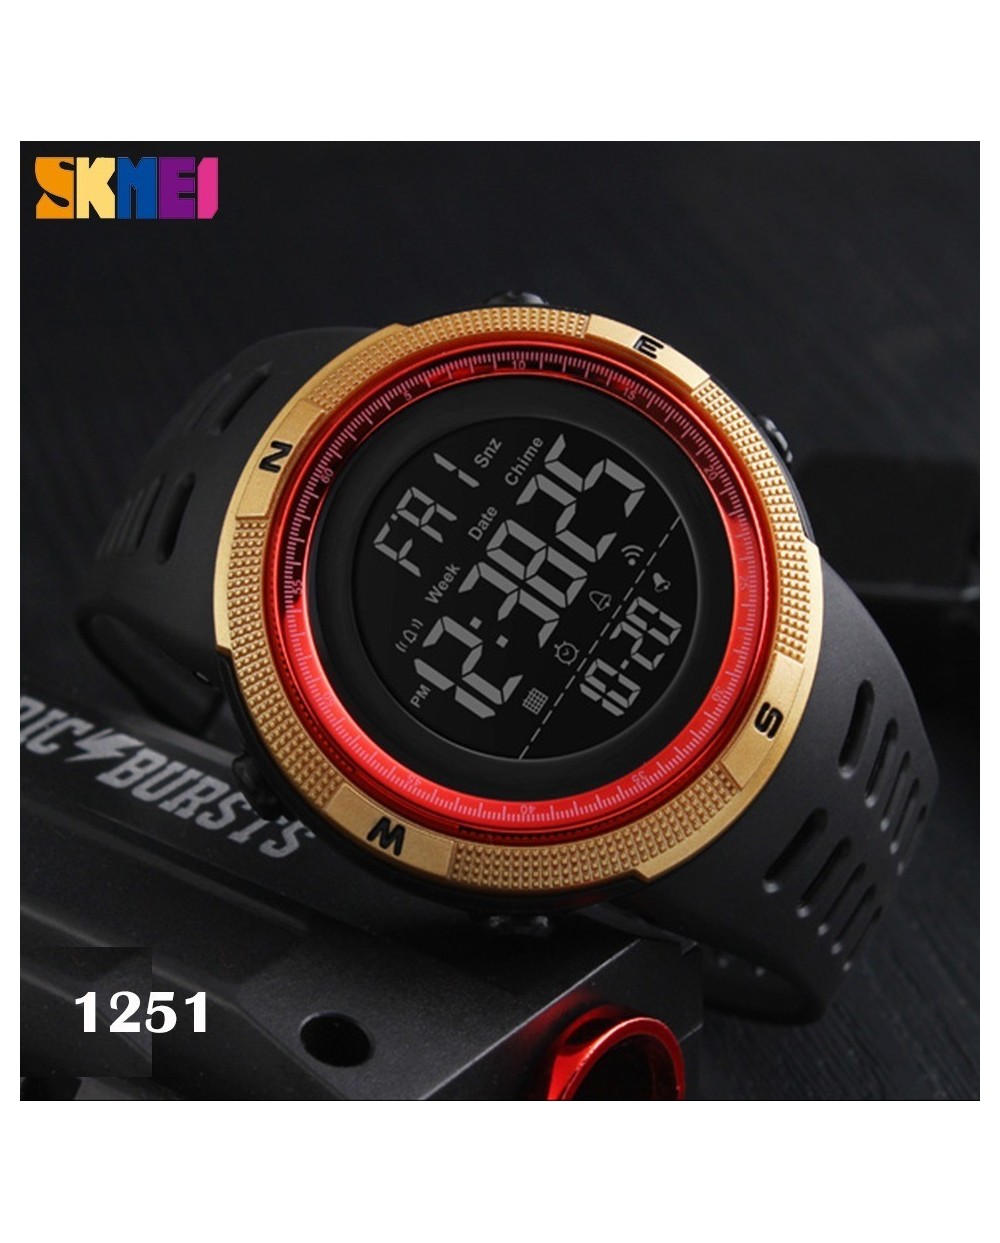 Αθλητικό ρολόι χειρός ανδρικό SKMEI 1251 GOLD NAD RED με βηματομετρητή